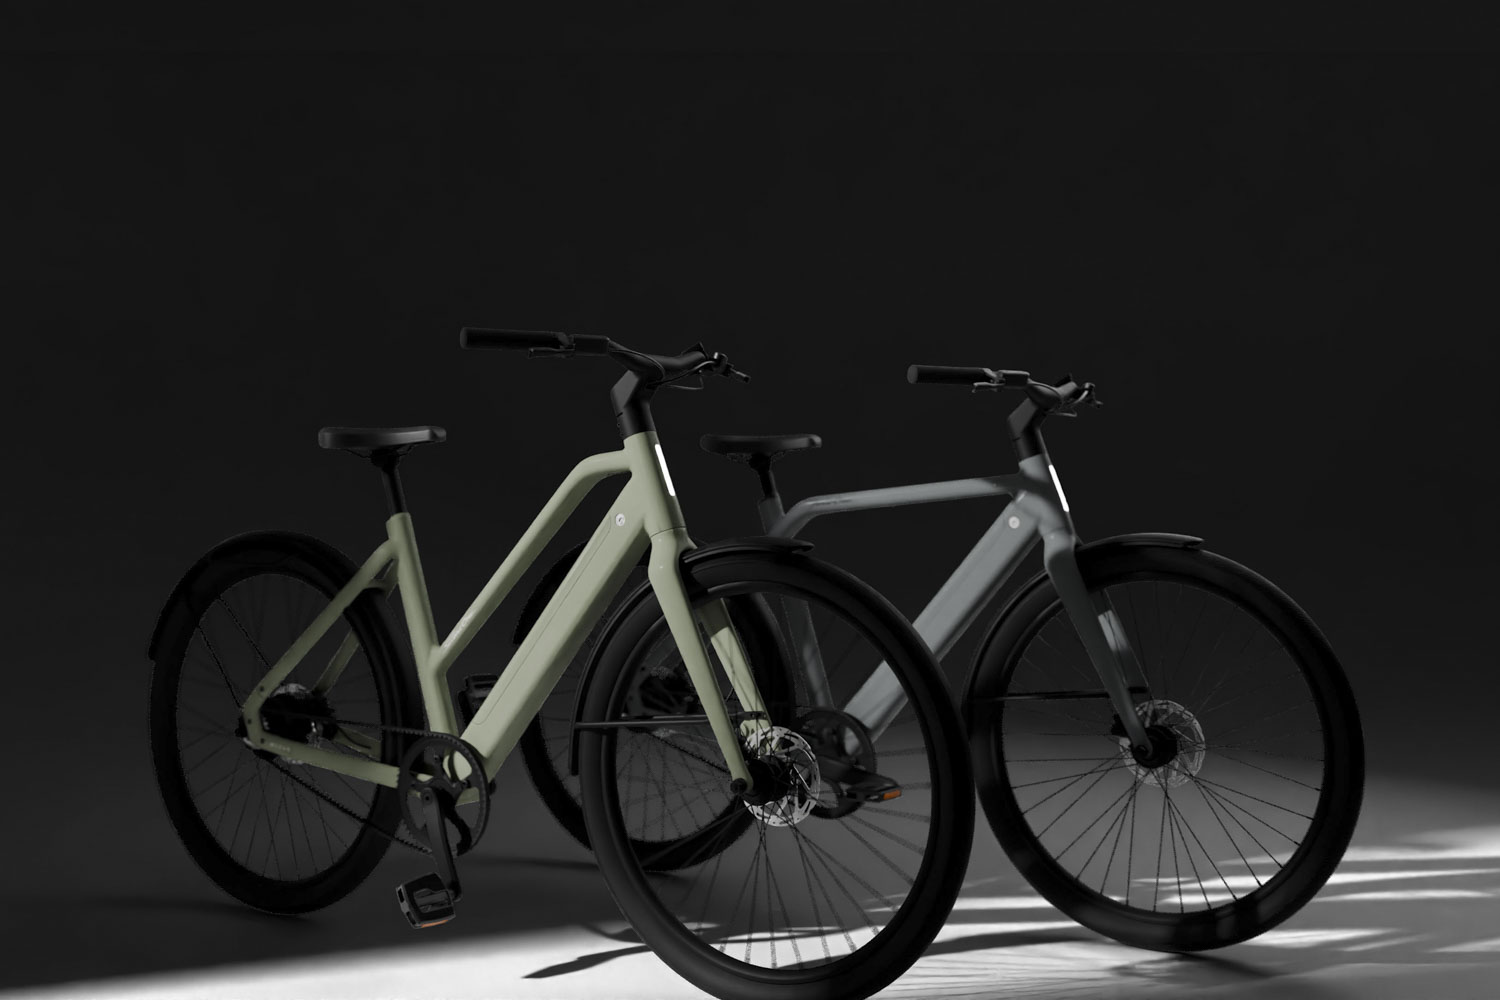 nieuwsfiets-showroom-moevs-komt-met-twee-nieuwe-e-bikes